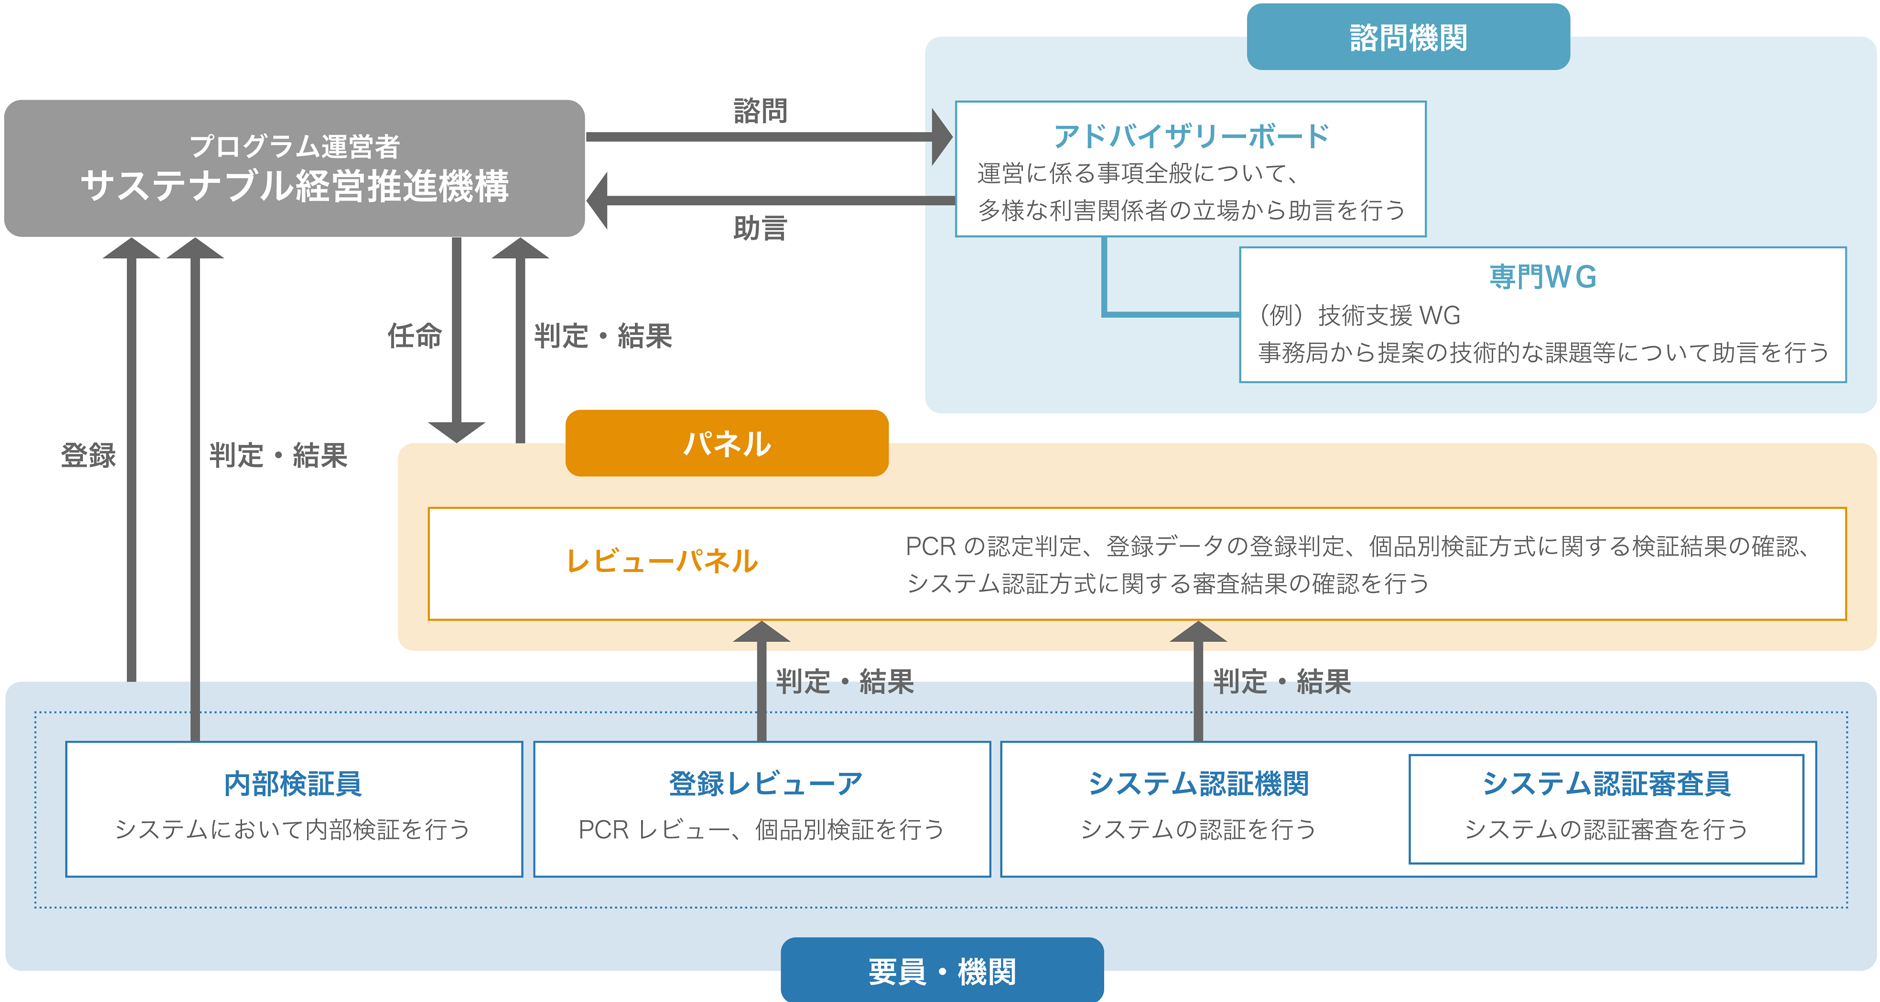 プログラムの運営体制図